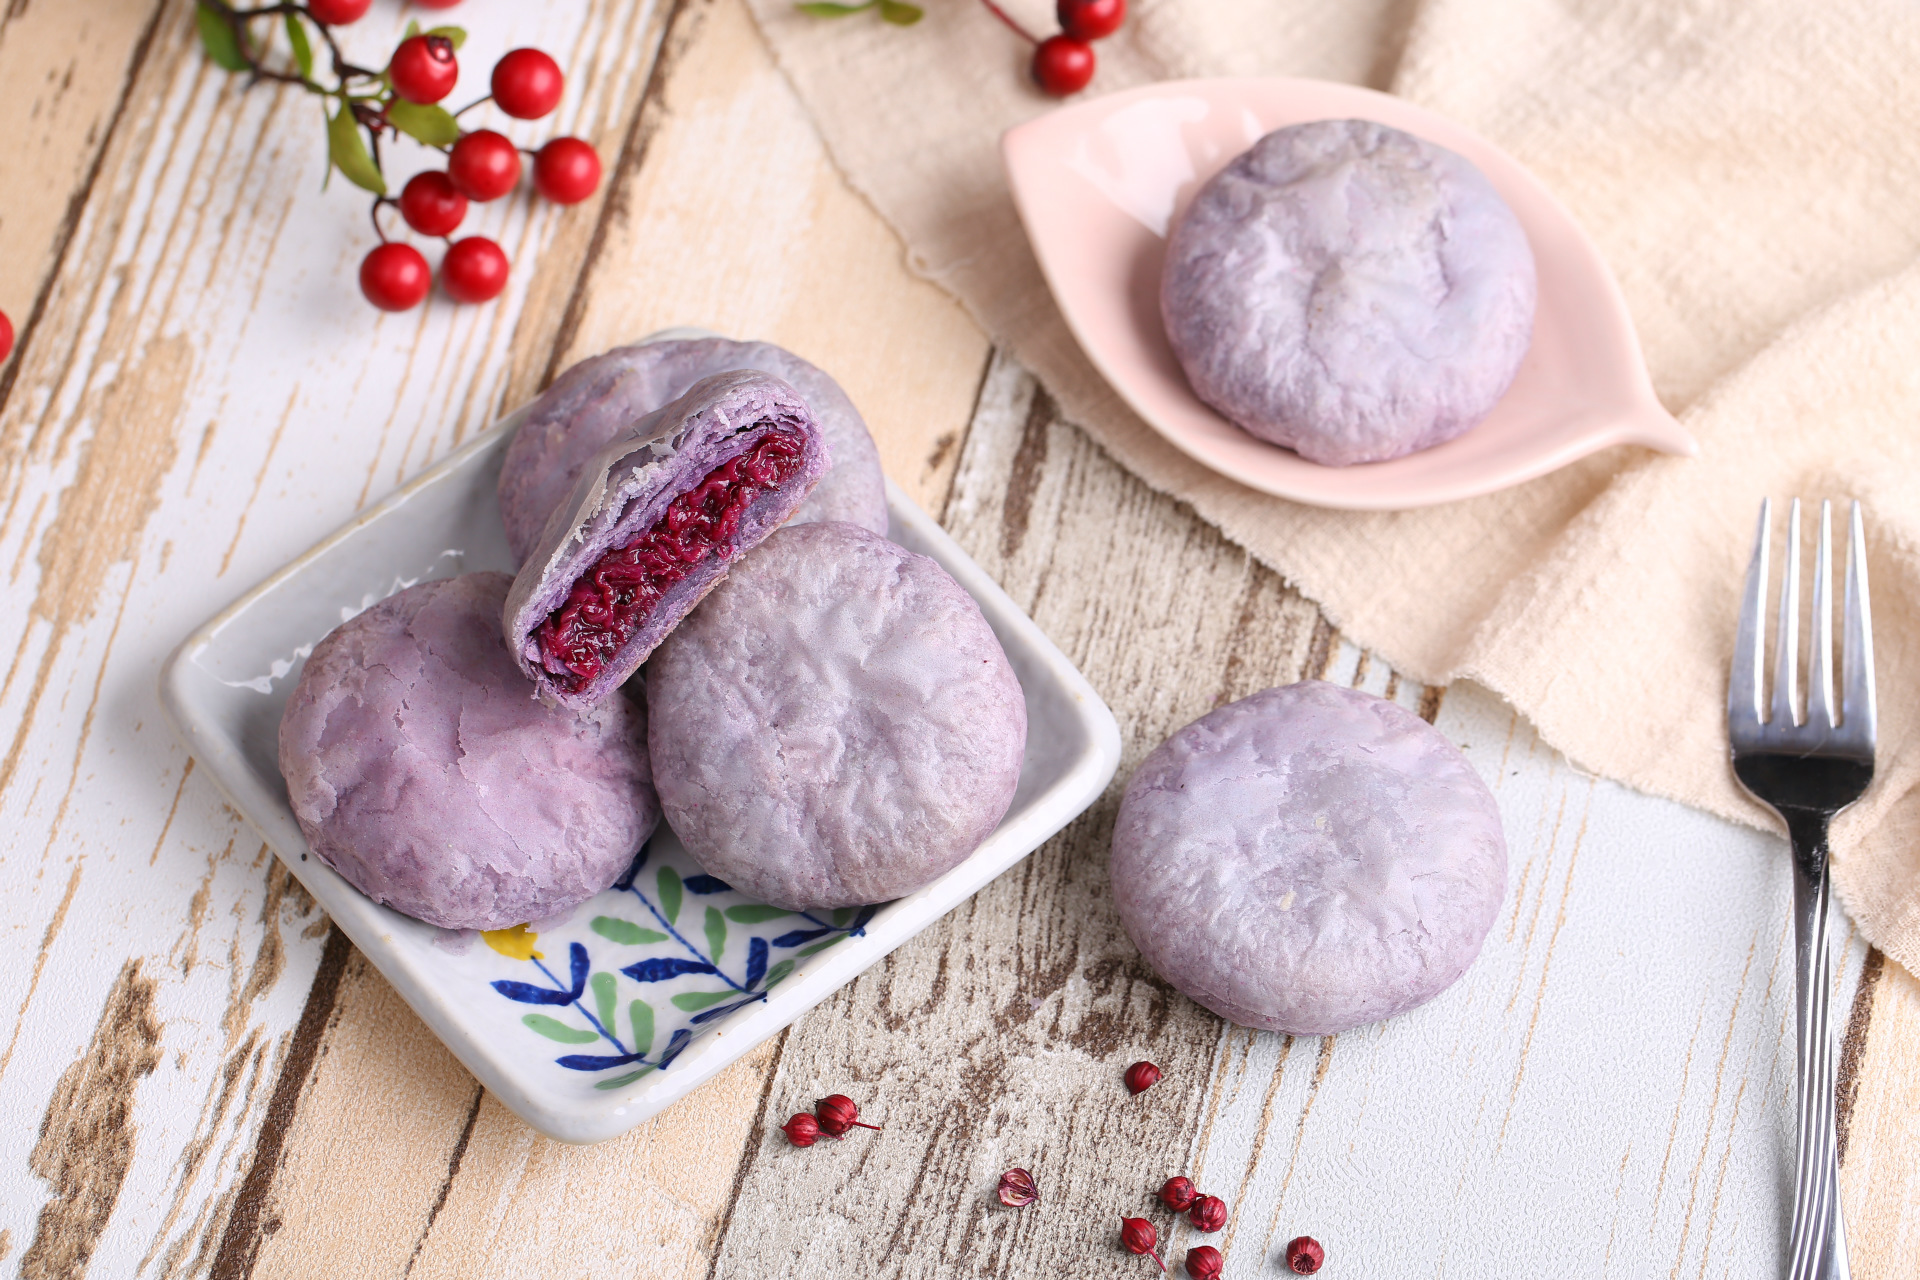 云南特产 紫薯鲜花饼 纯手工糕点零食 